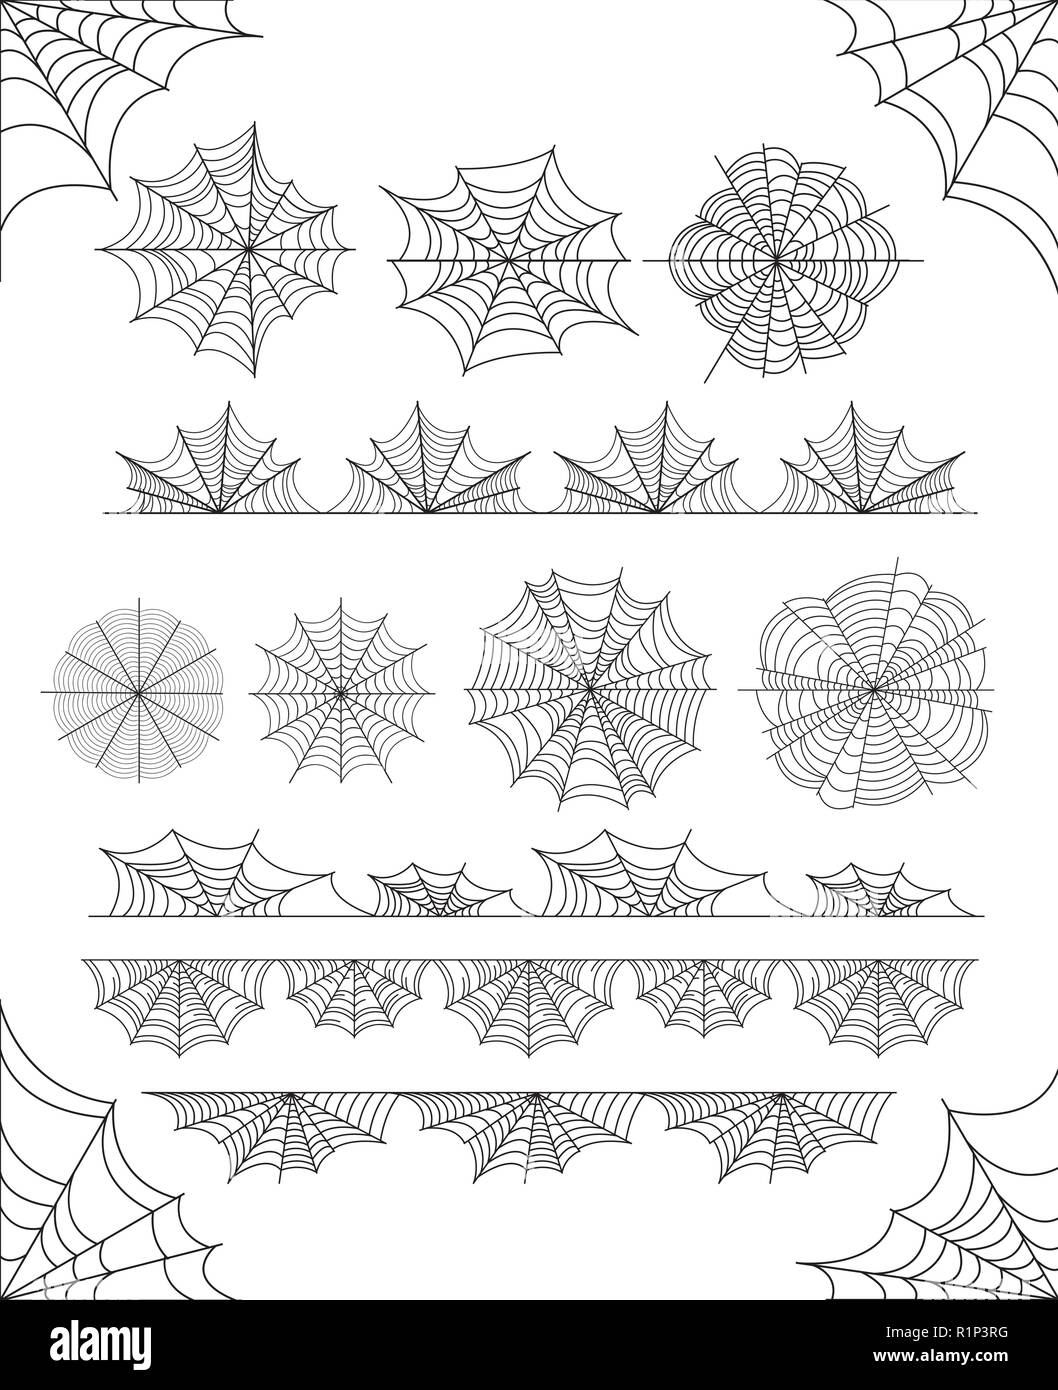 Ensemble de conception d'araignée sur fond blanc Illustration de Vecteur